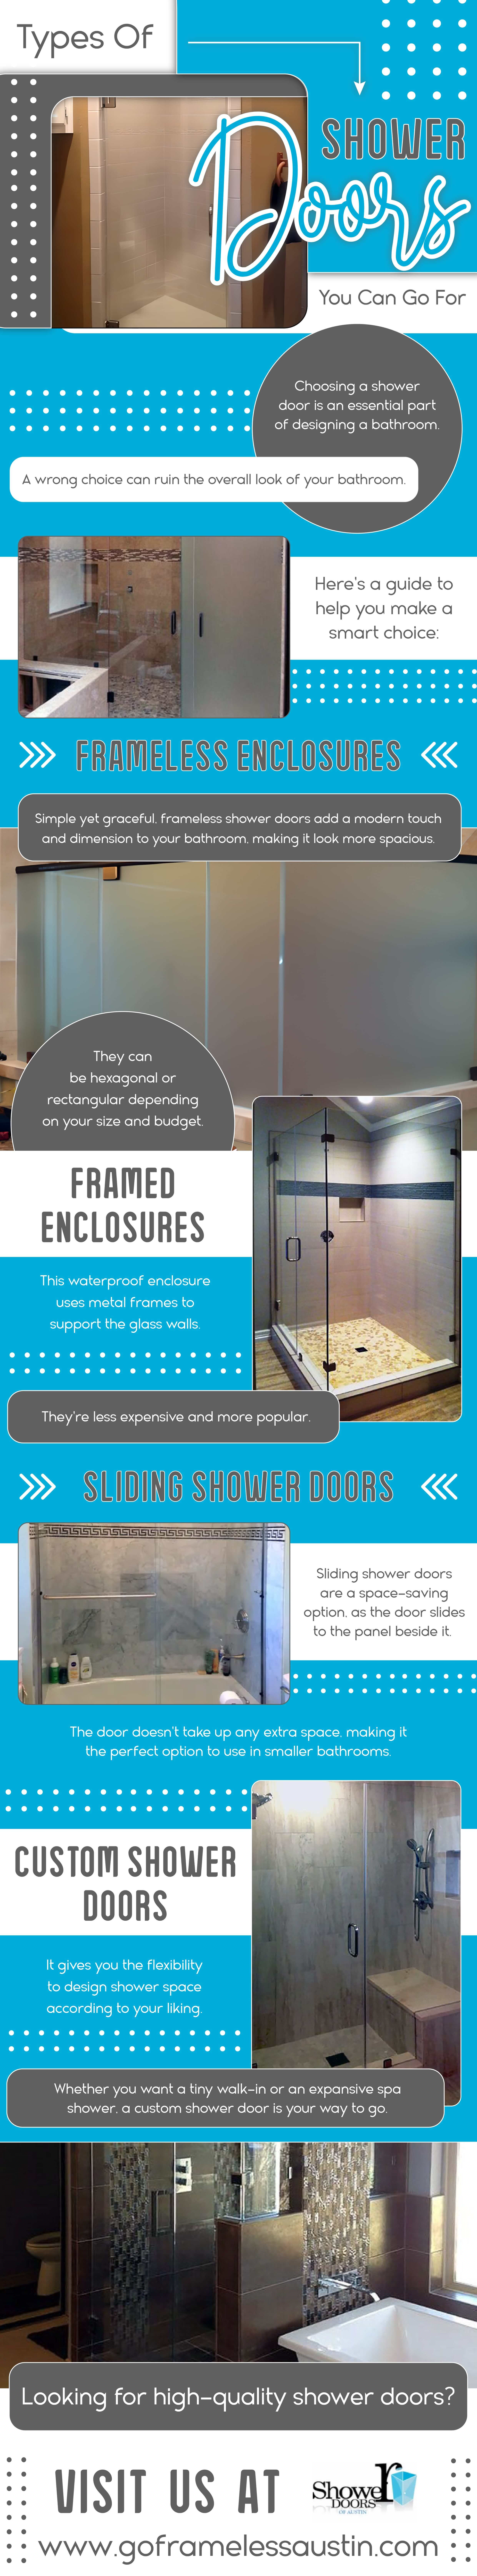 Types of shower doors